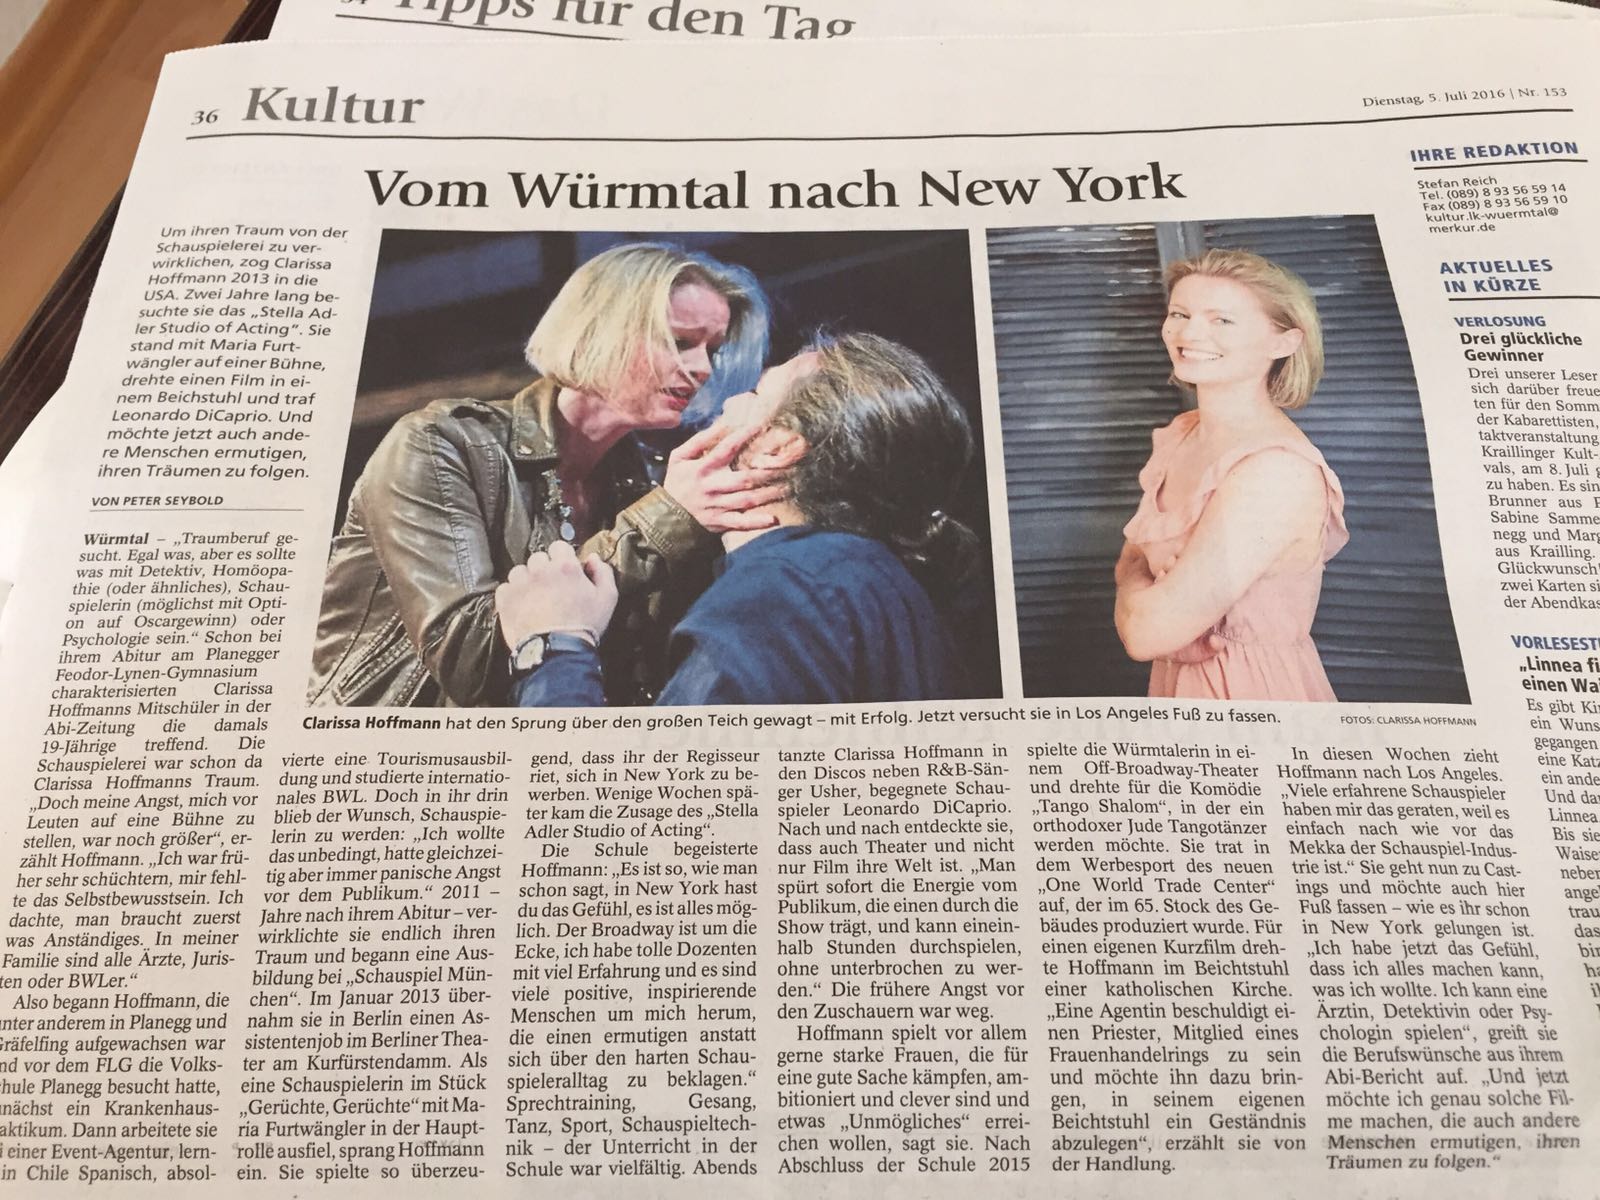 Featured in Munich's newspaper MÜNCHNER MERKUR